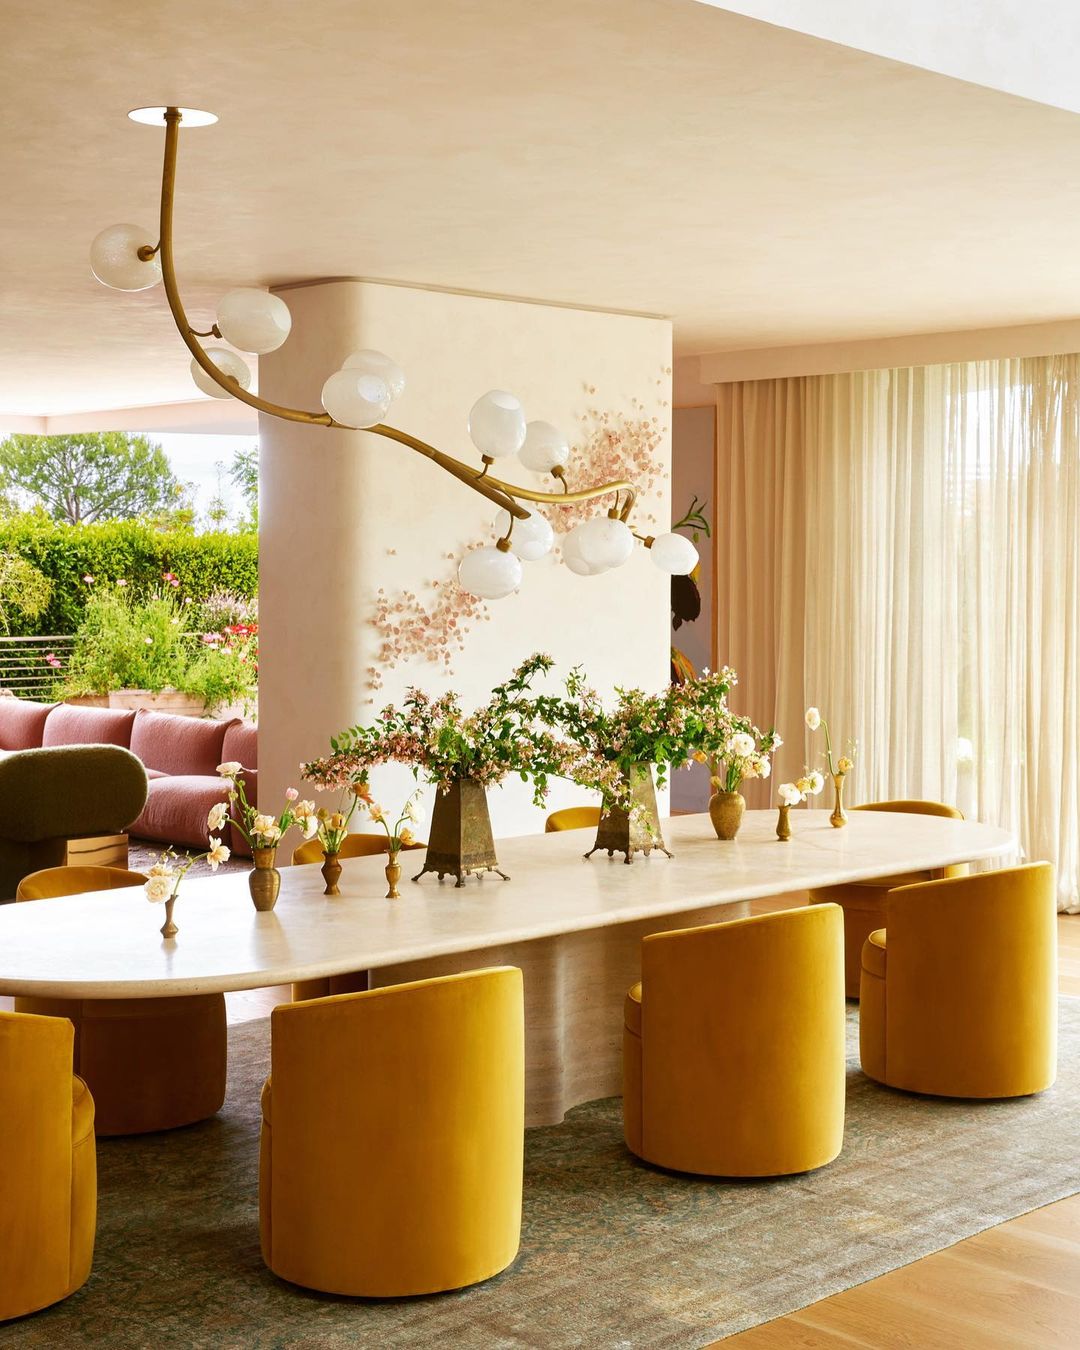 To σπίτι του John Legend και της Chrissy Teigen συνδυάζει τη γήινη παλέτα με τα έντονα χρώματα